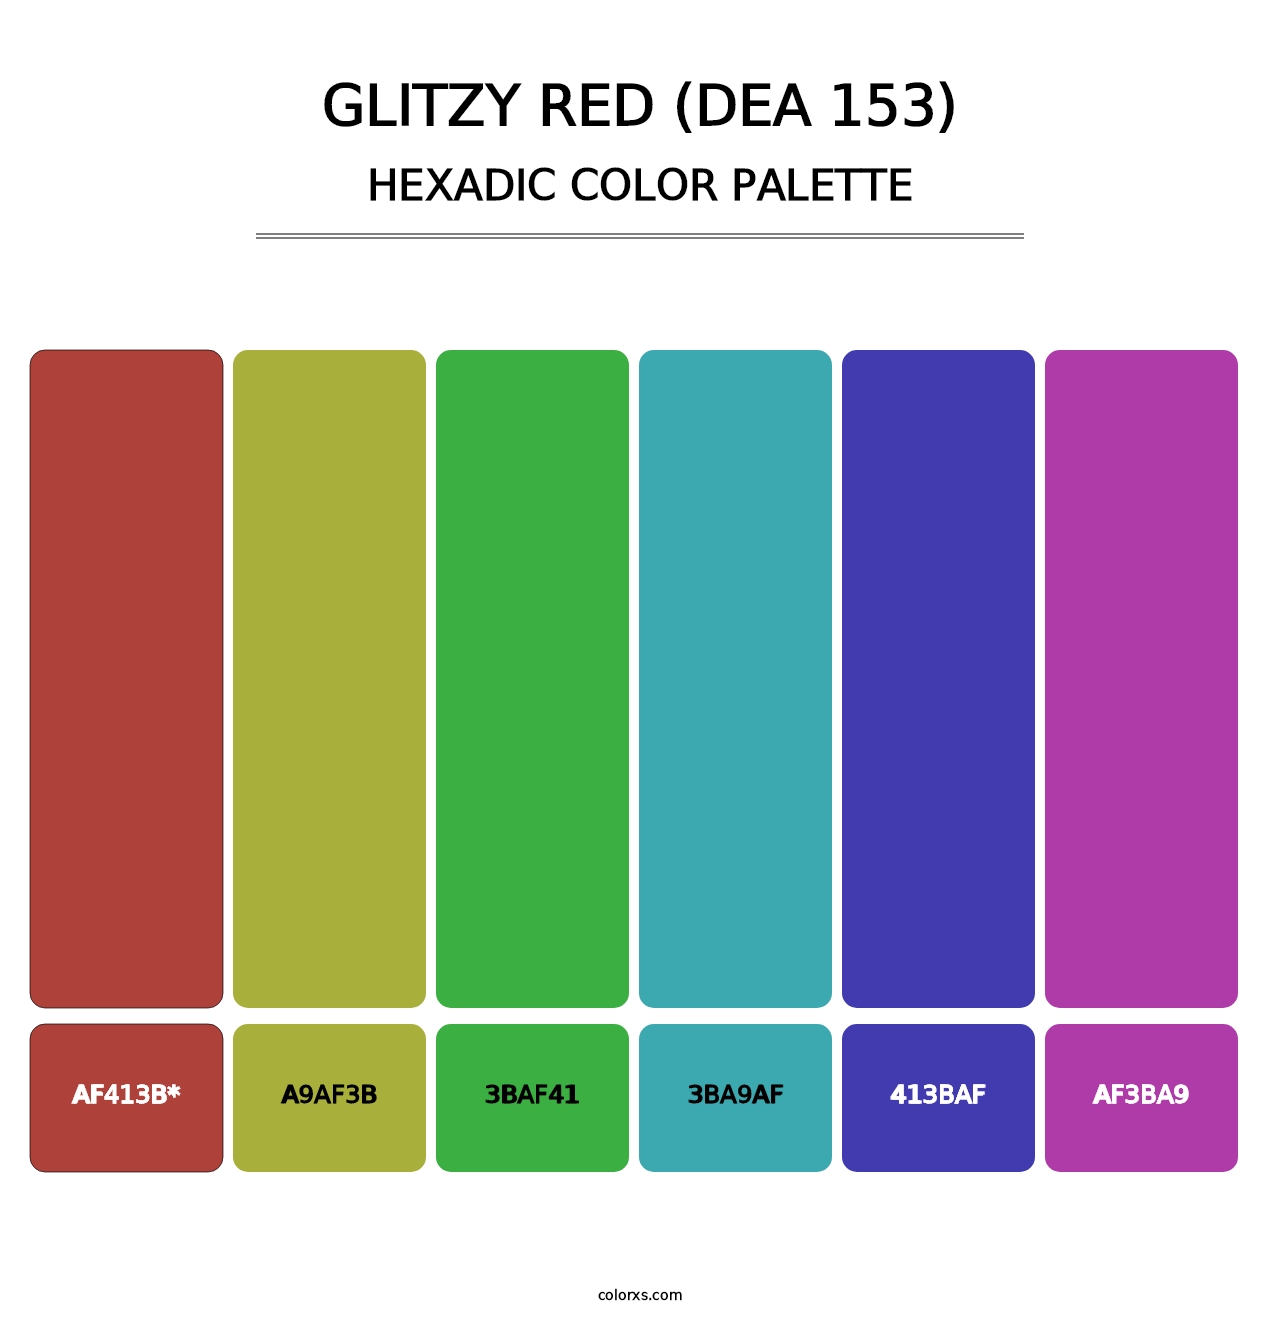 Glitzy Red (DEA 153) - Hexadic Color Palette